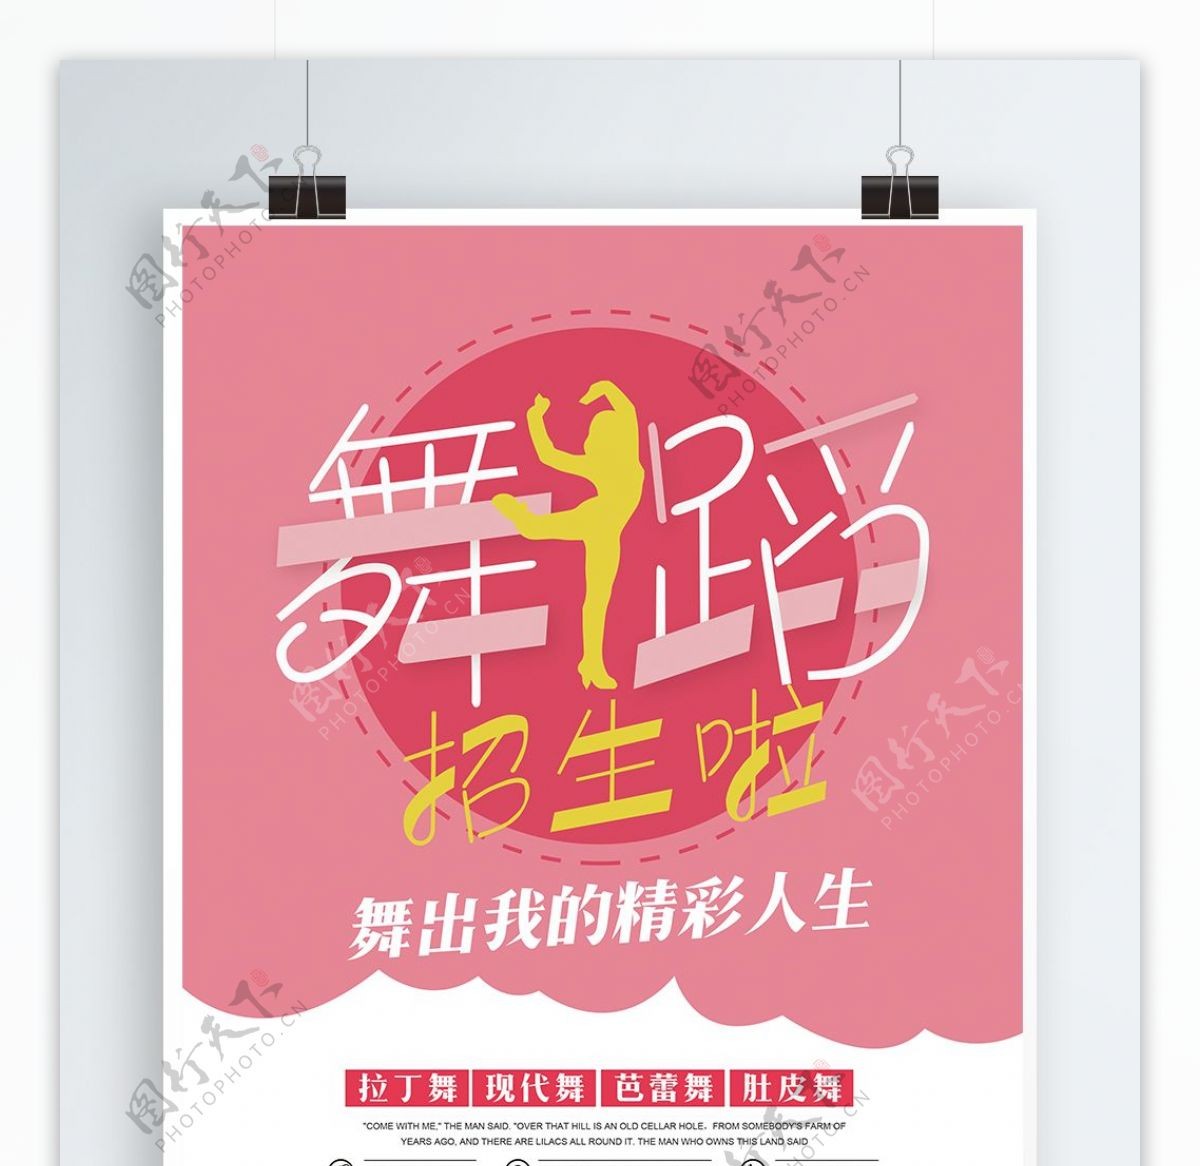 粉色简约舞蹈培训班宣传招生海报